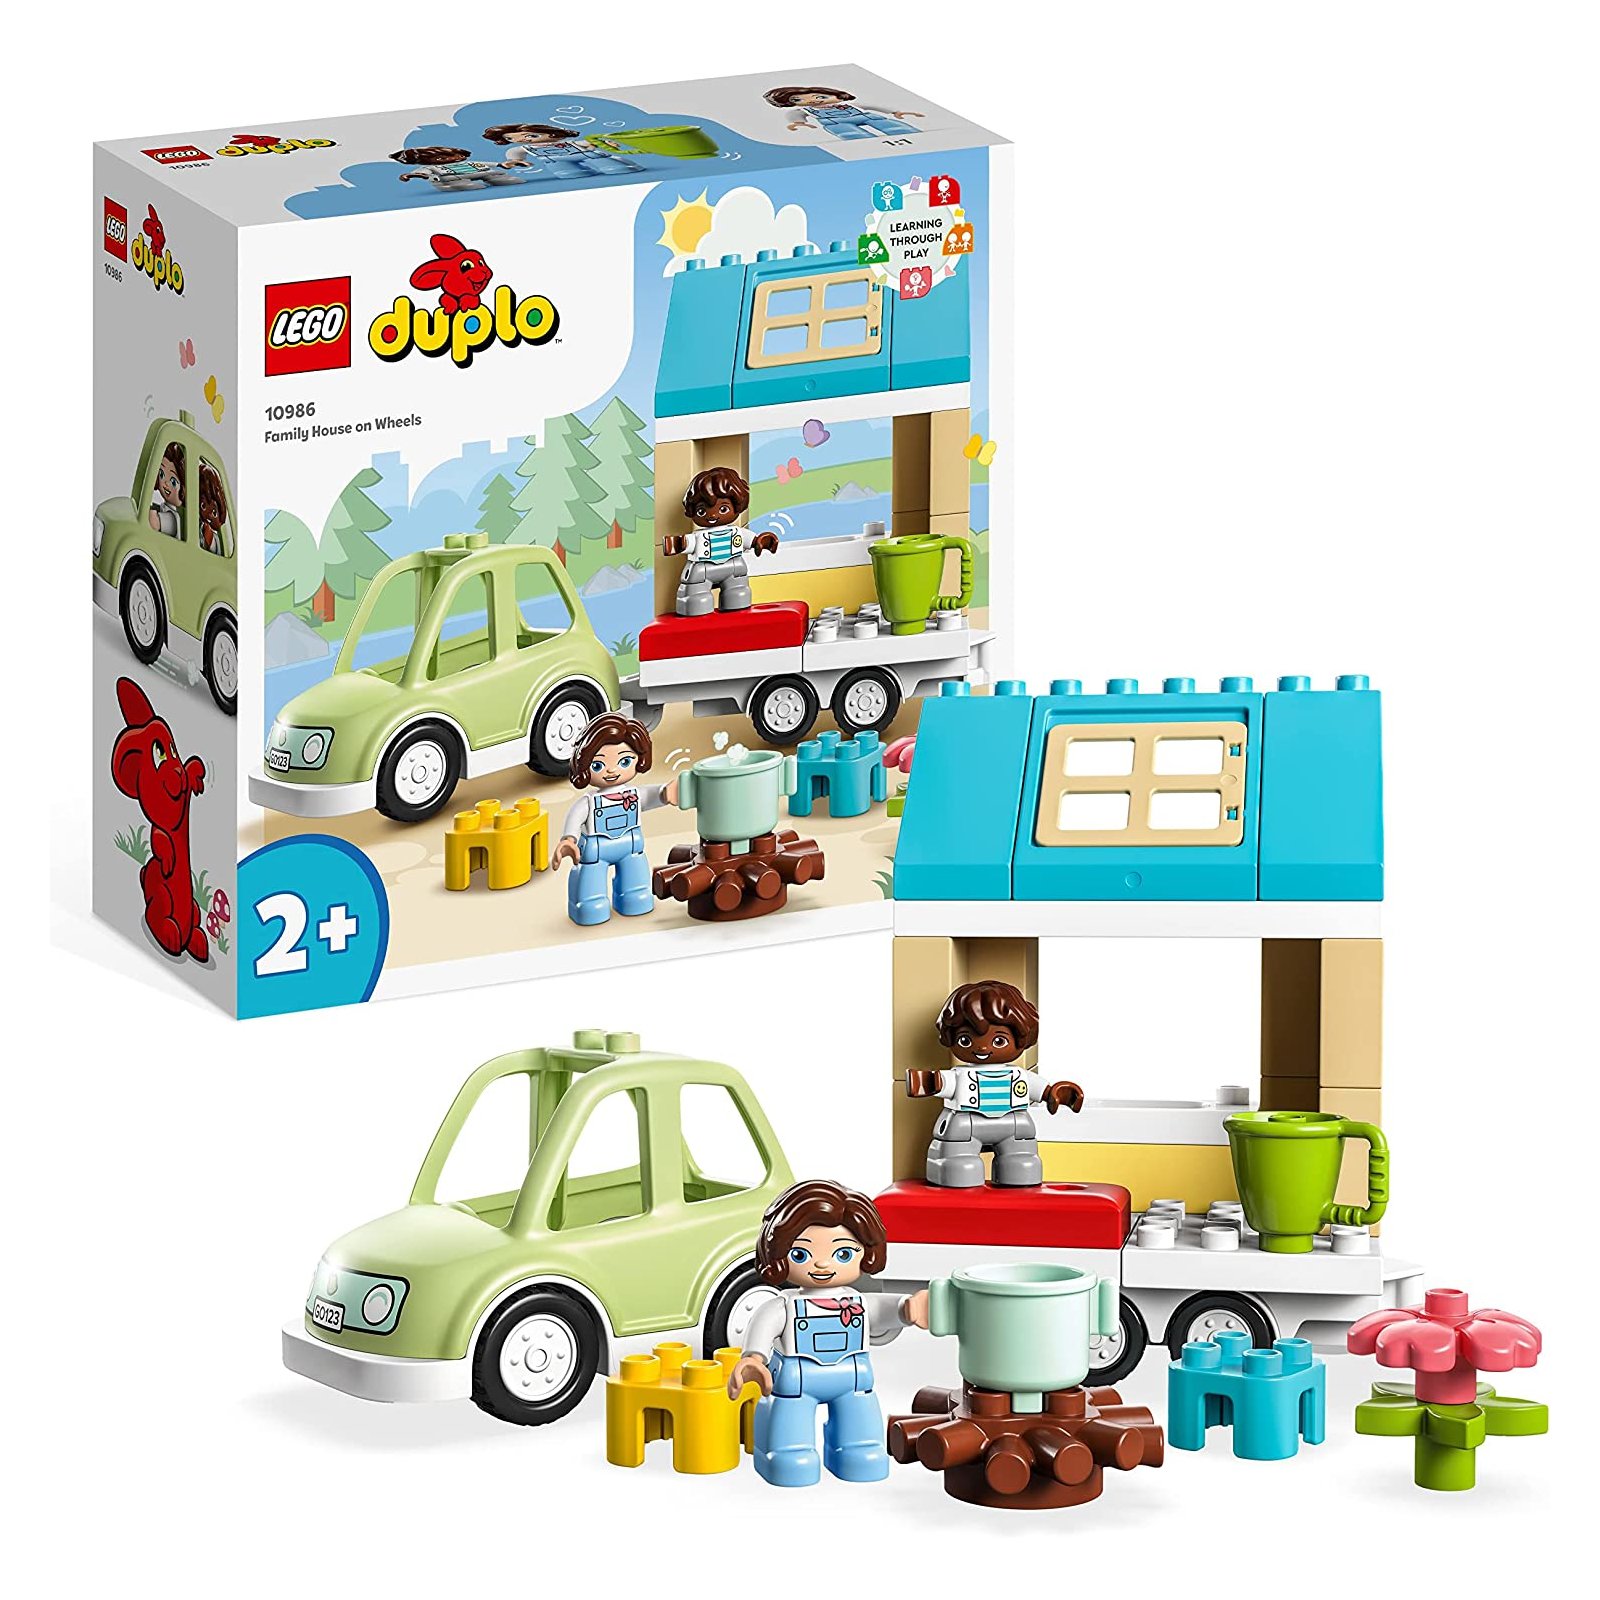 LEGO - Duplo - 10986 Zuhause auf Rädern